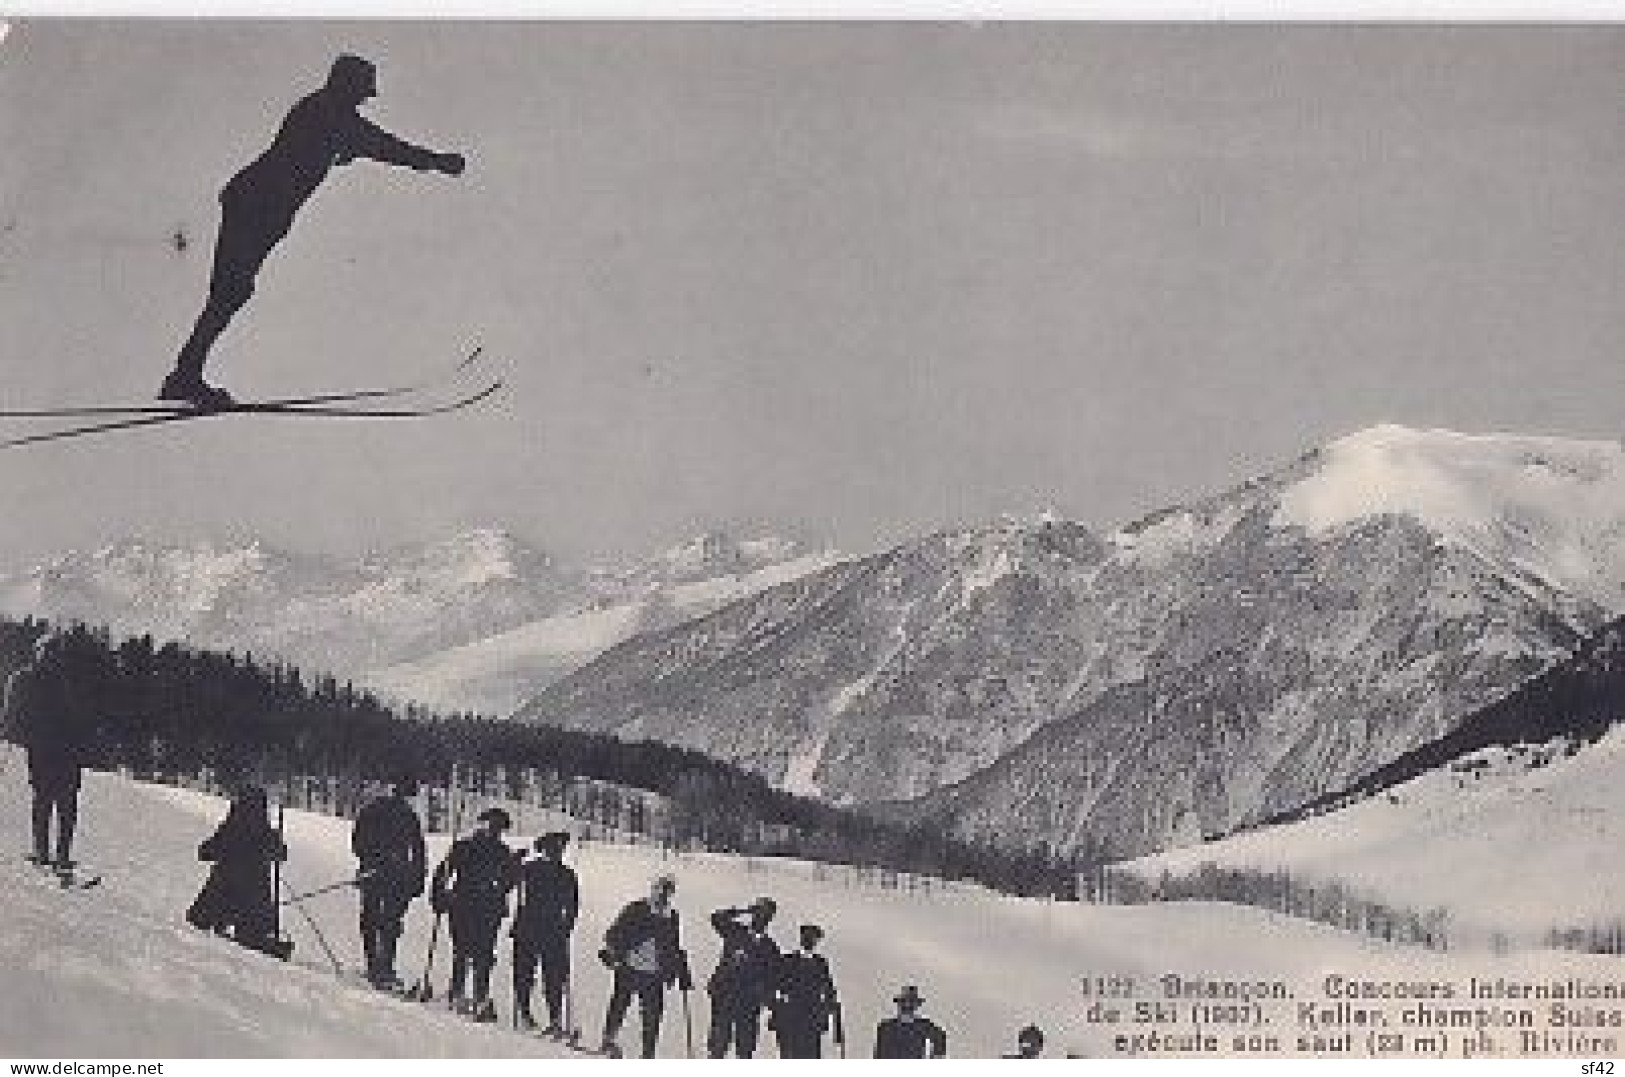 BRIANCON              CONCOURS INTERNATIONAL DE SKI  1907.   KELLER CHAMPION SUISSE - Sports D'hiver